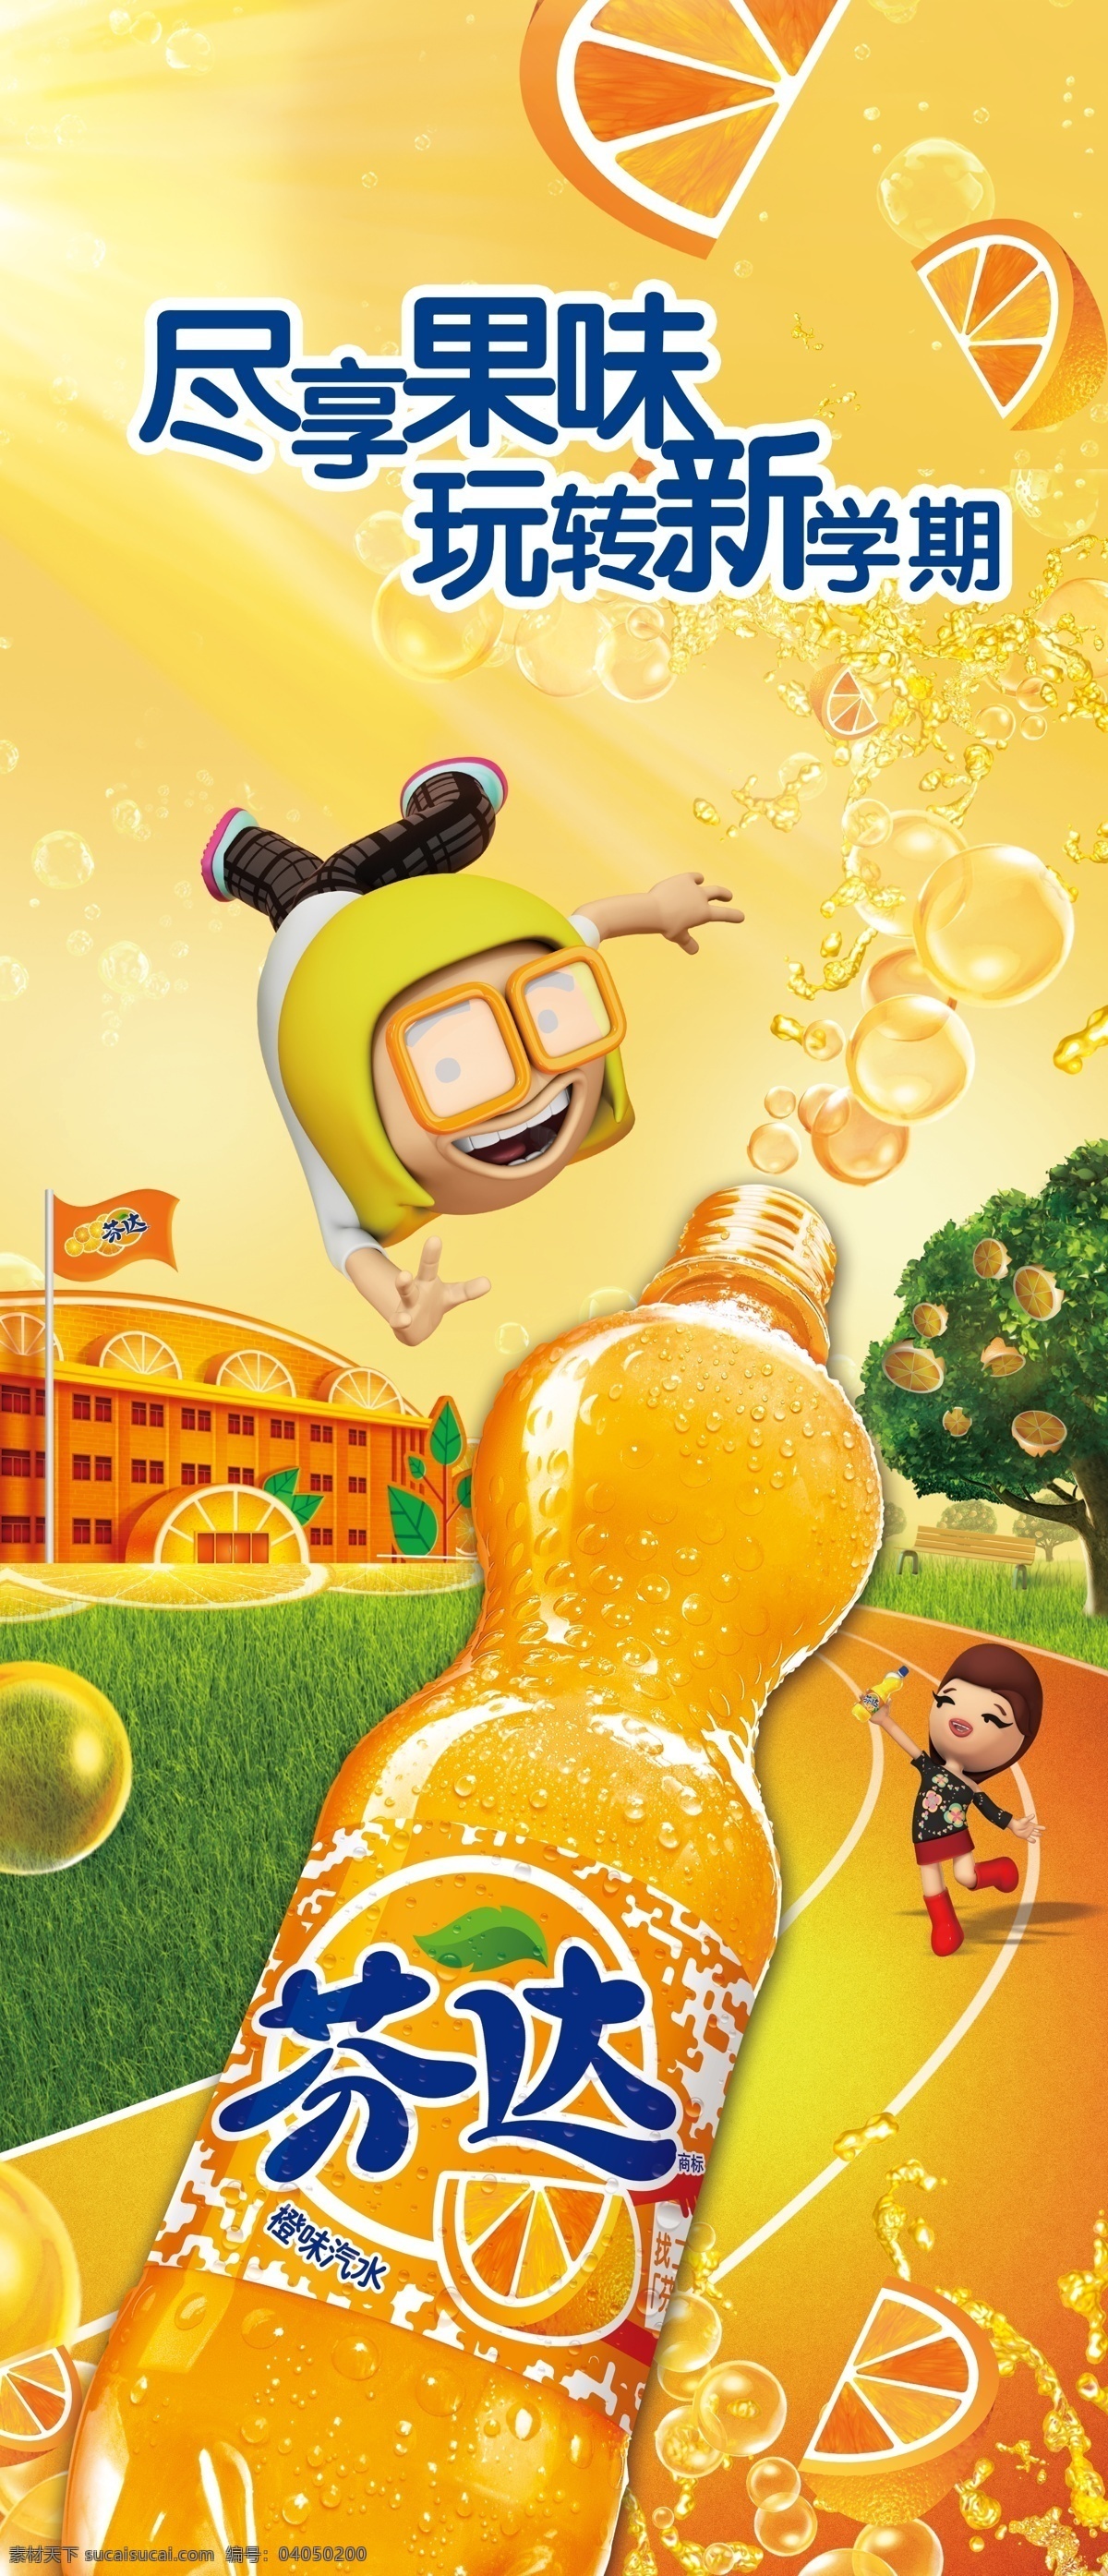 芬达海报 芬达 饮料 学校 气泡 卡通人物 橙子 草地 汽水 马路 广告设计模板 源文件